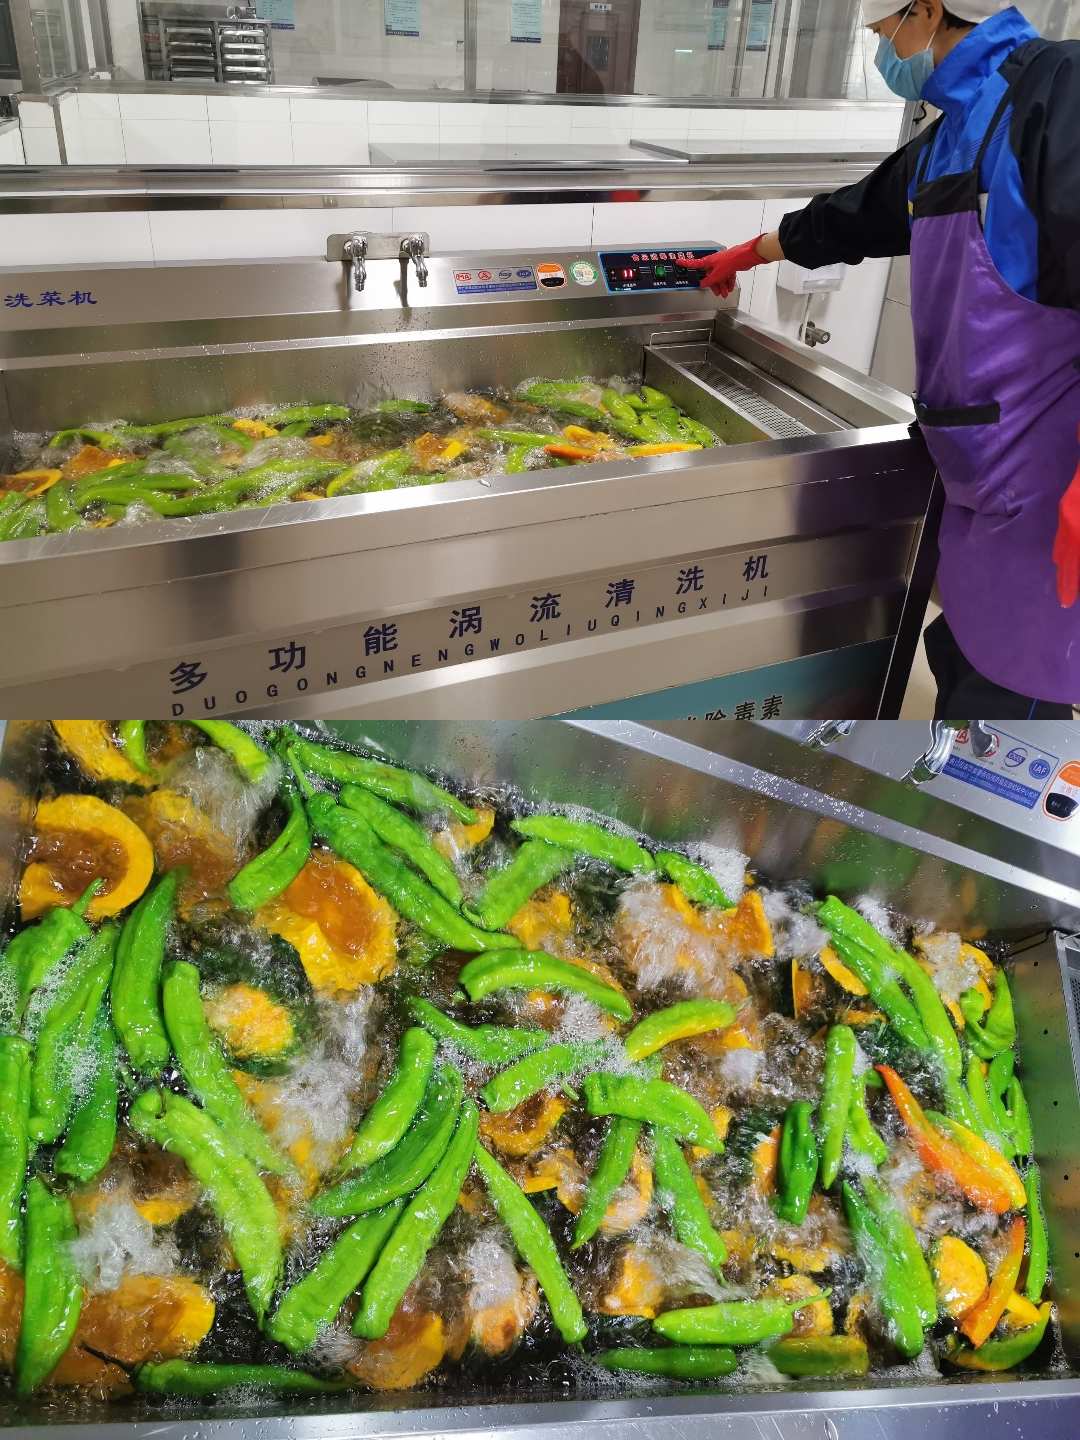 蔬菜加工过程中不应该_蔬菜加工中先切后洗_副食品加工烹调过程中错误的是 蔬菜先洗后切